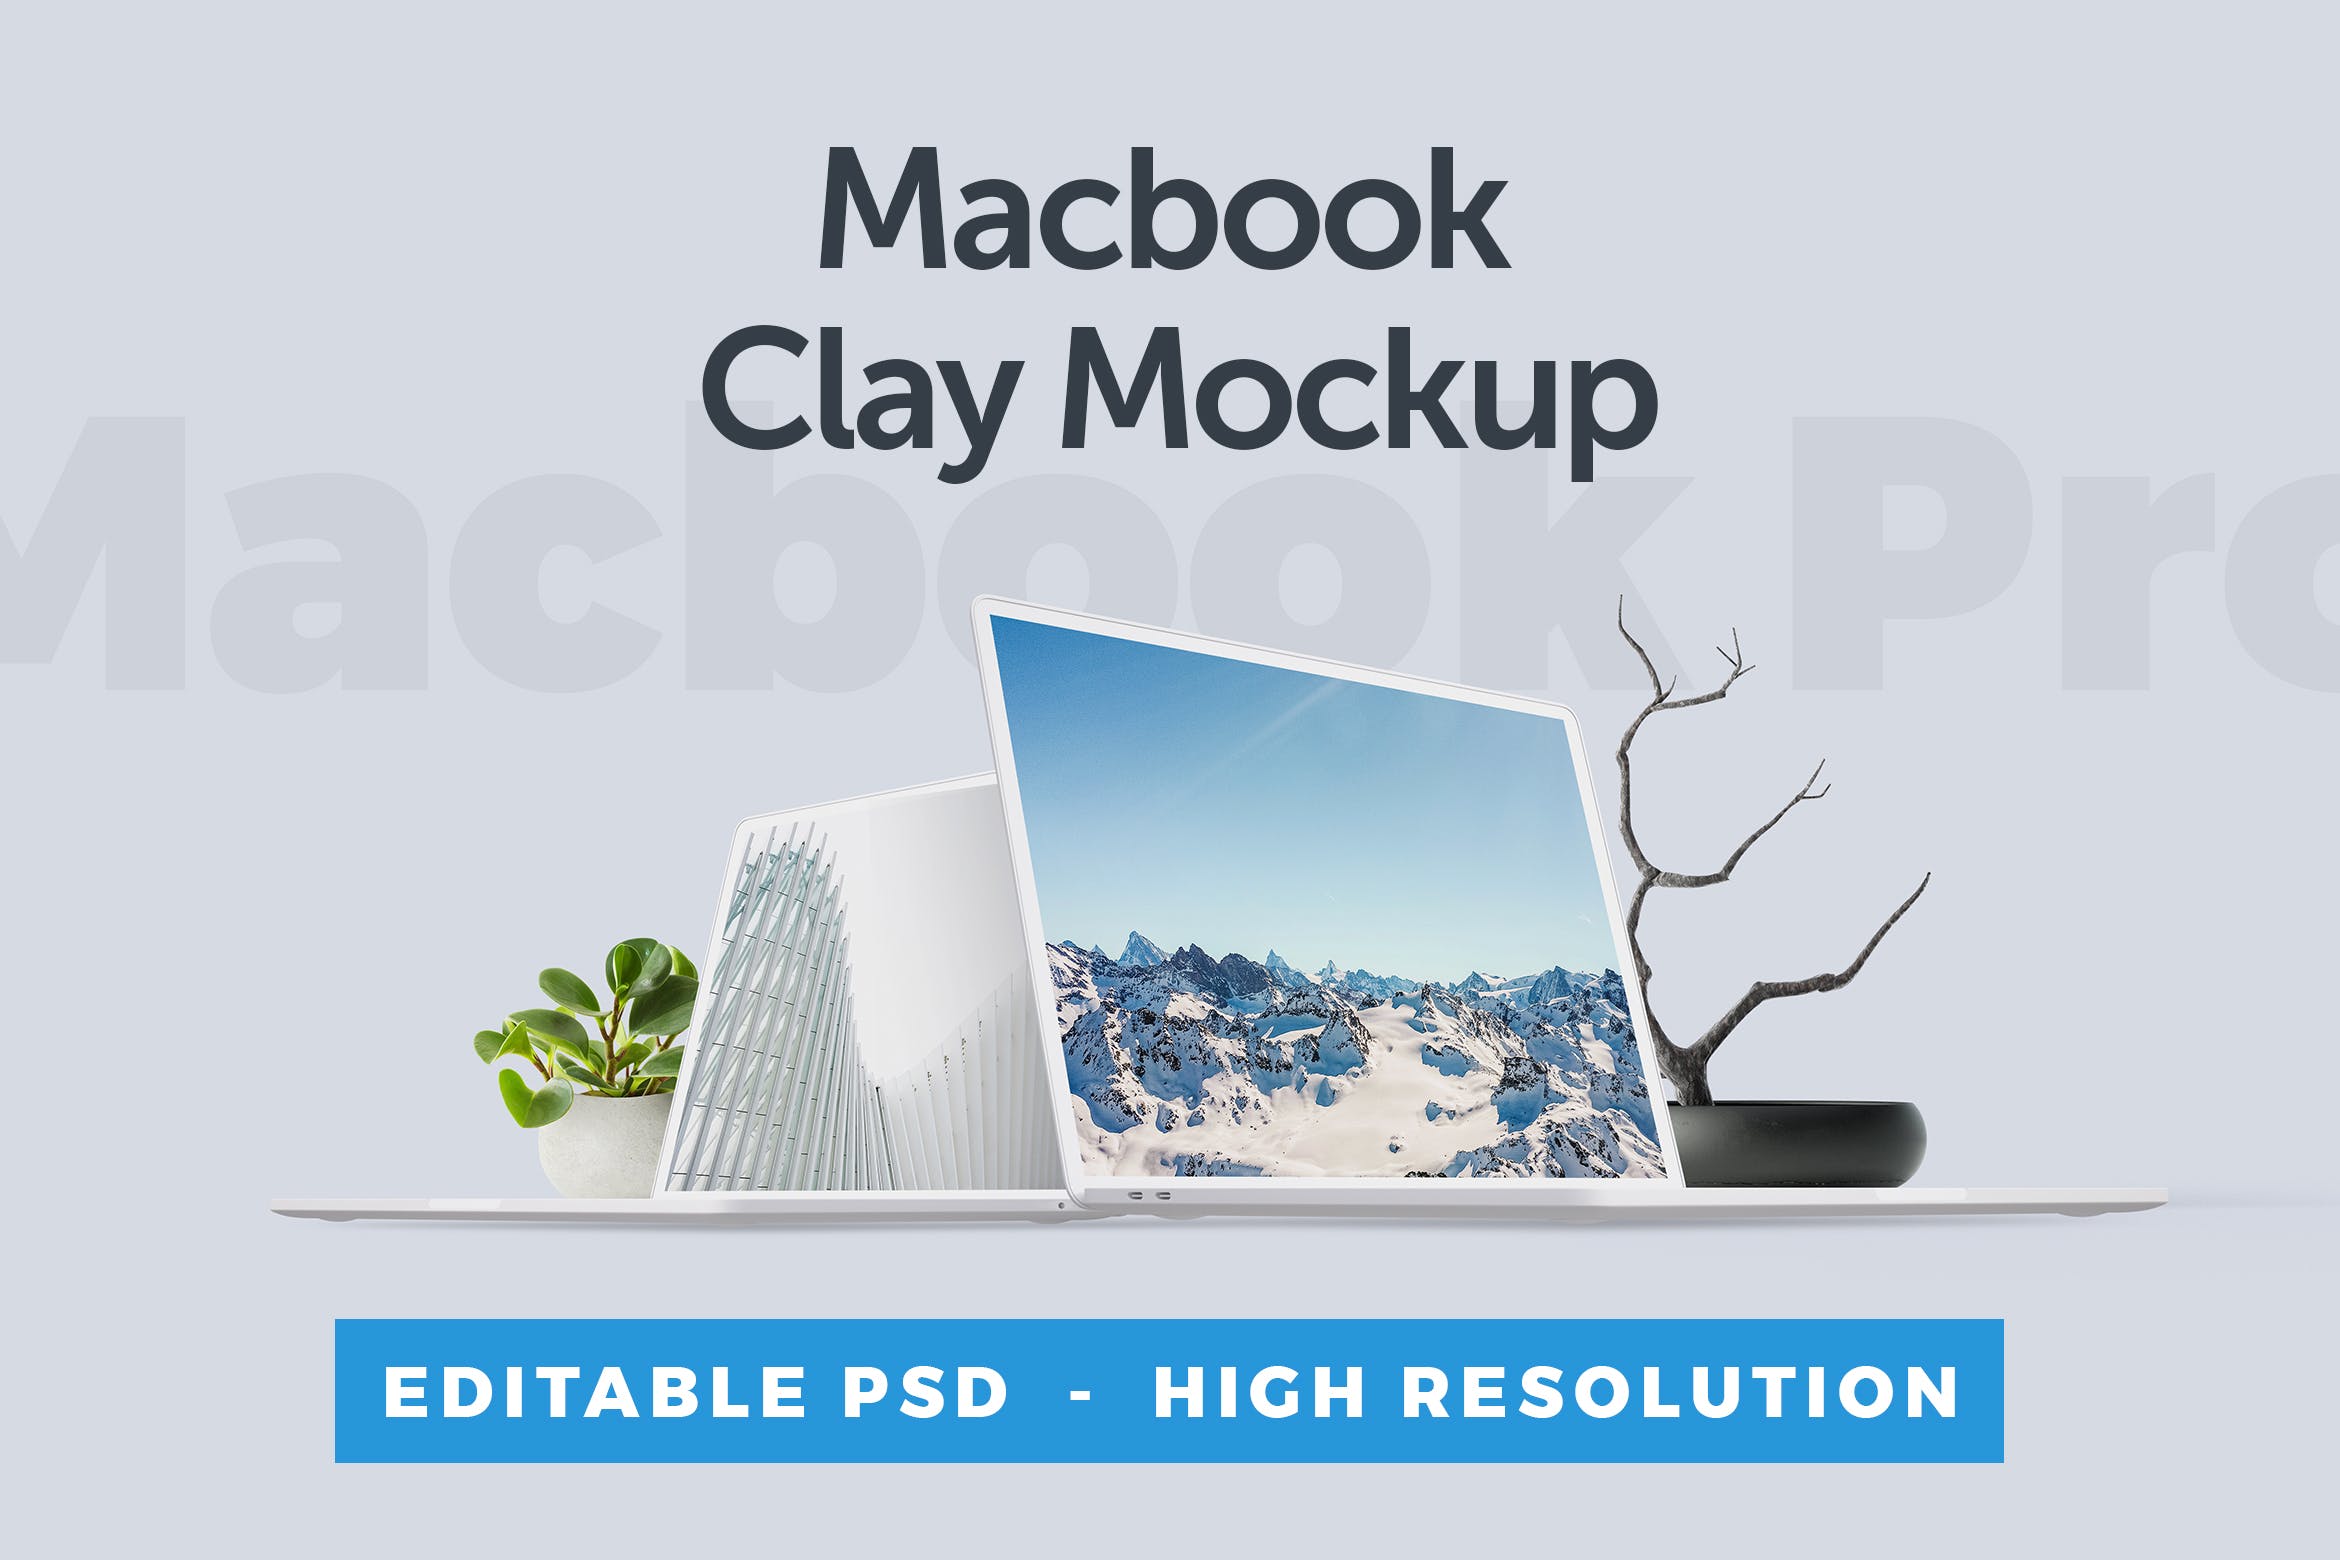 MacBook笔记本电脑屏幕演示素材库精选样机 Macbook Clay Mockup插图